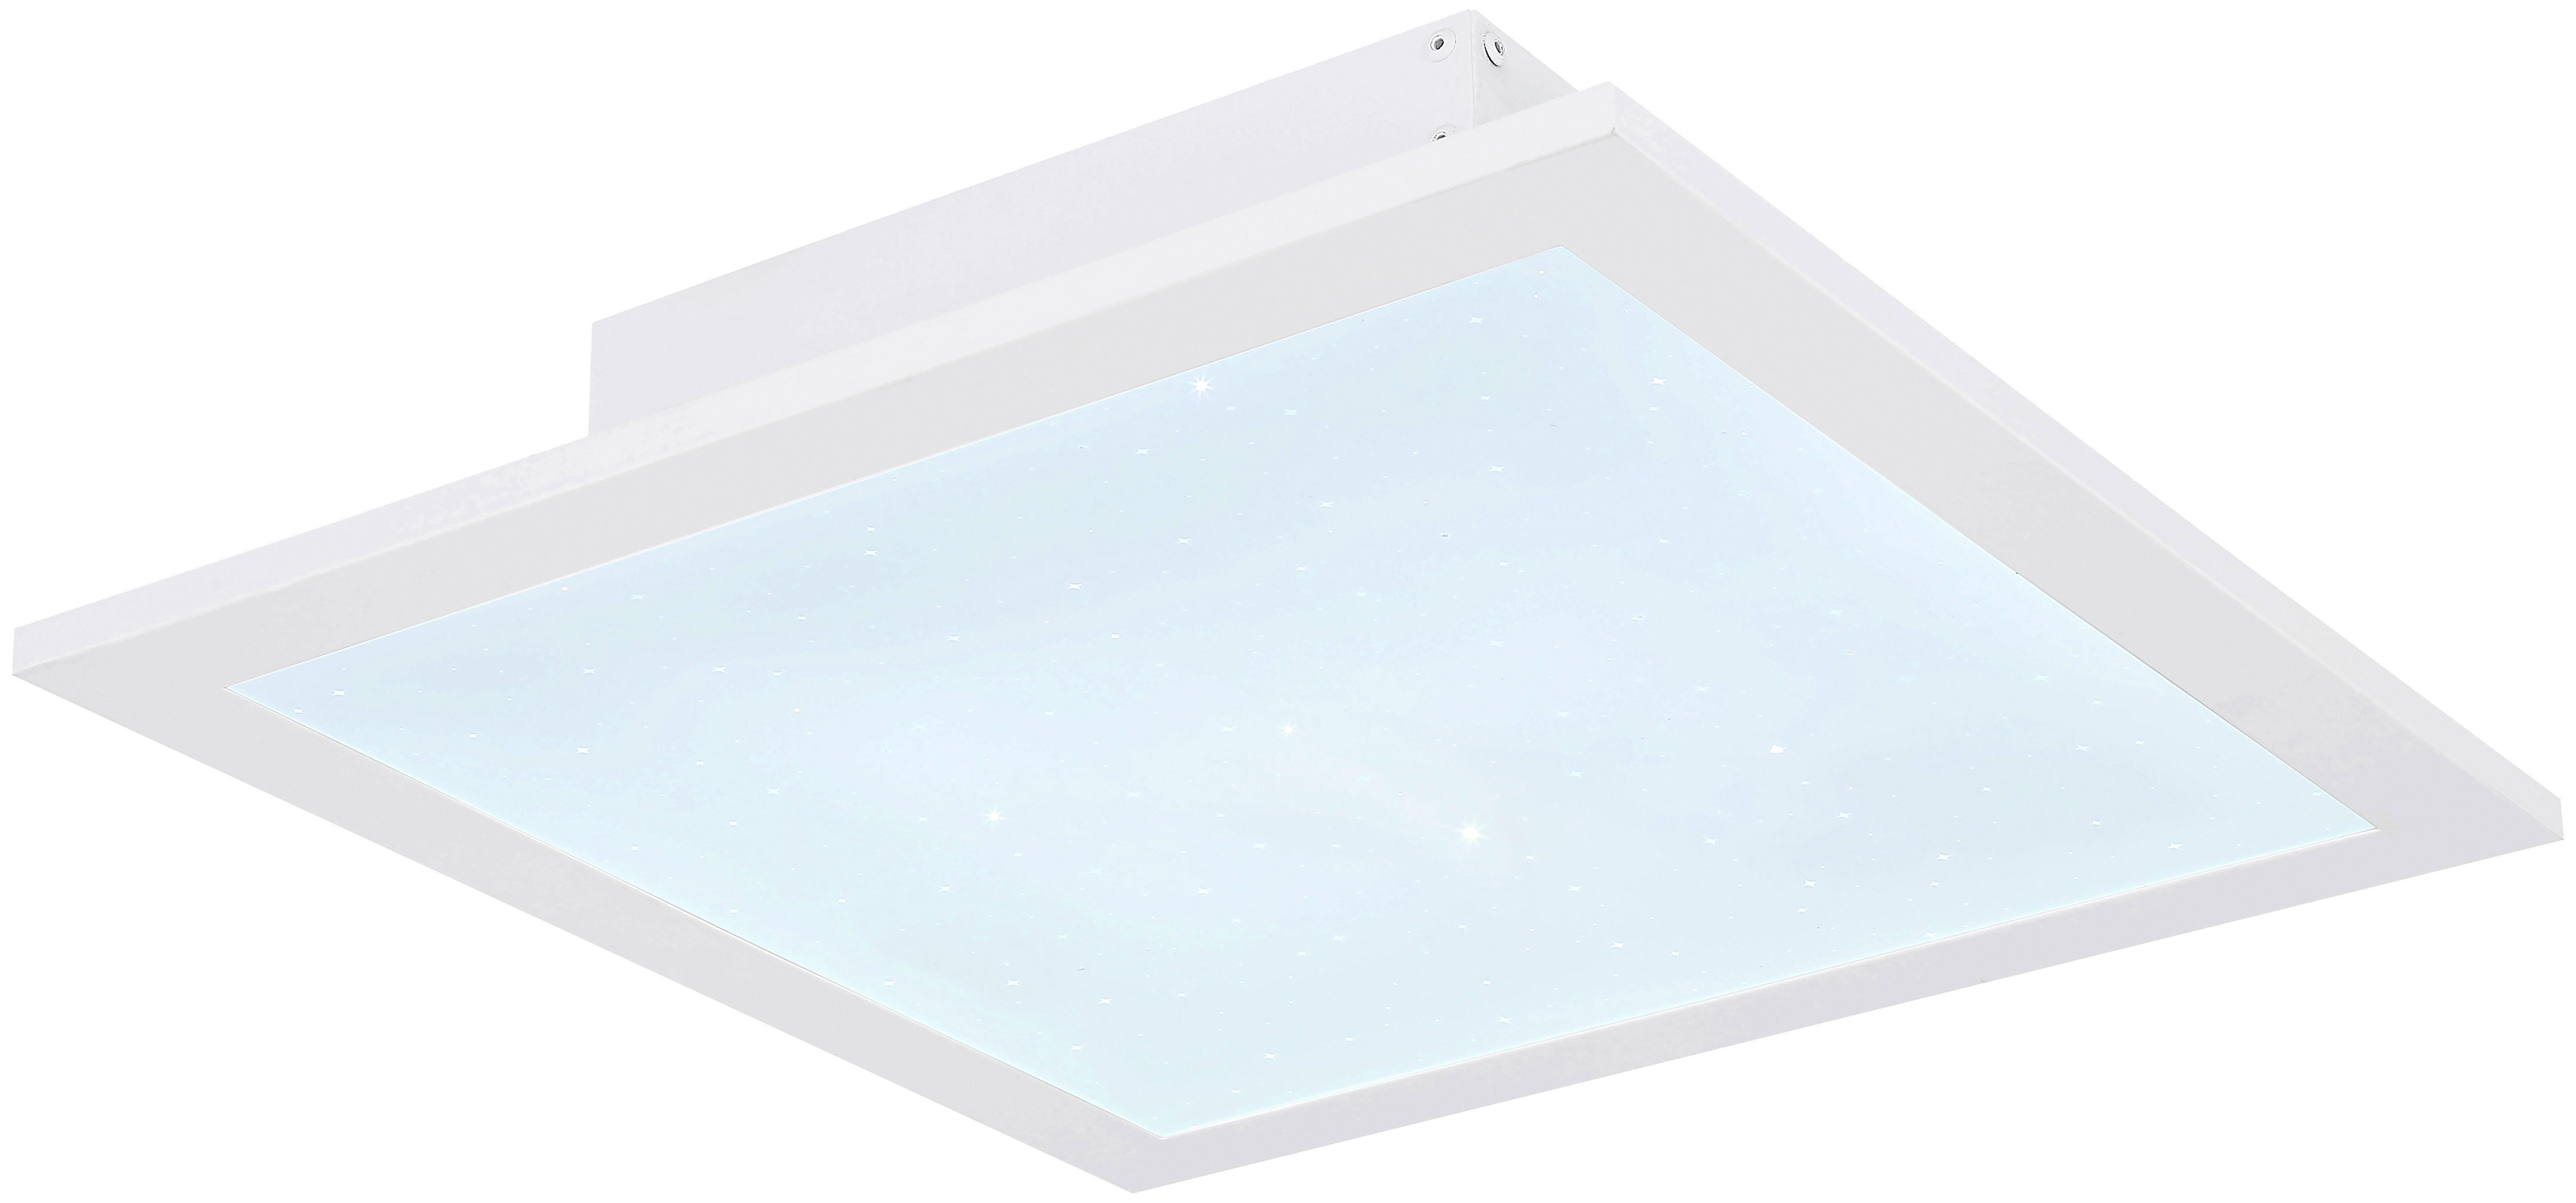 LED-Deckenleuchte Seron max. 14,4 Watt - Weiß, KONVENTIONELL, Kunststoff/Metall (30/30/6cm) - Modern Living